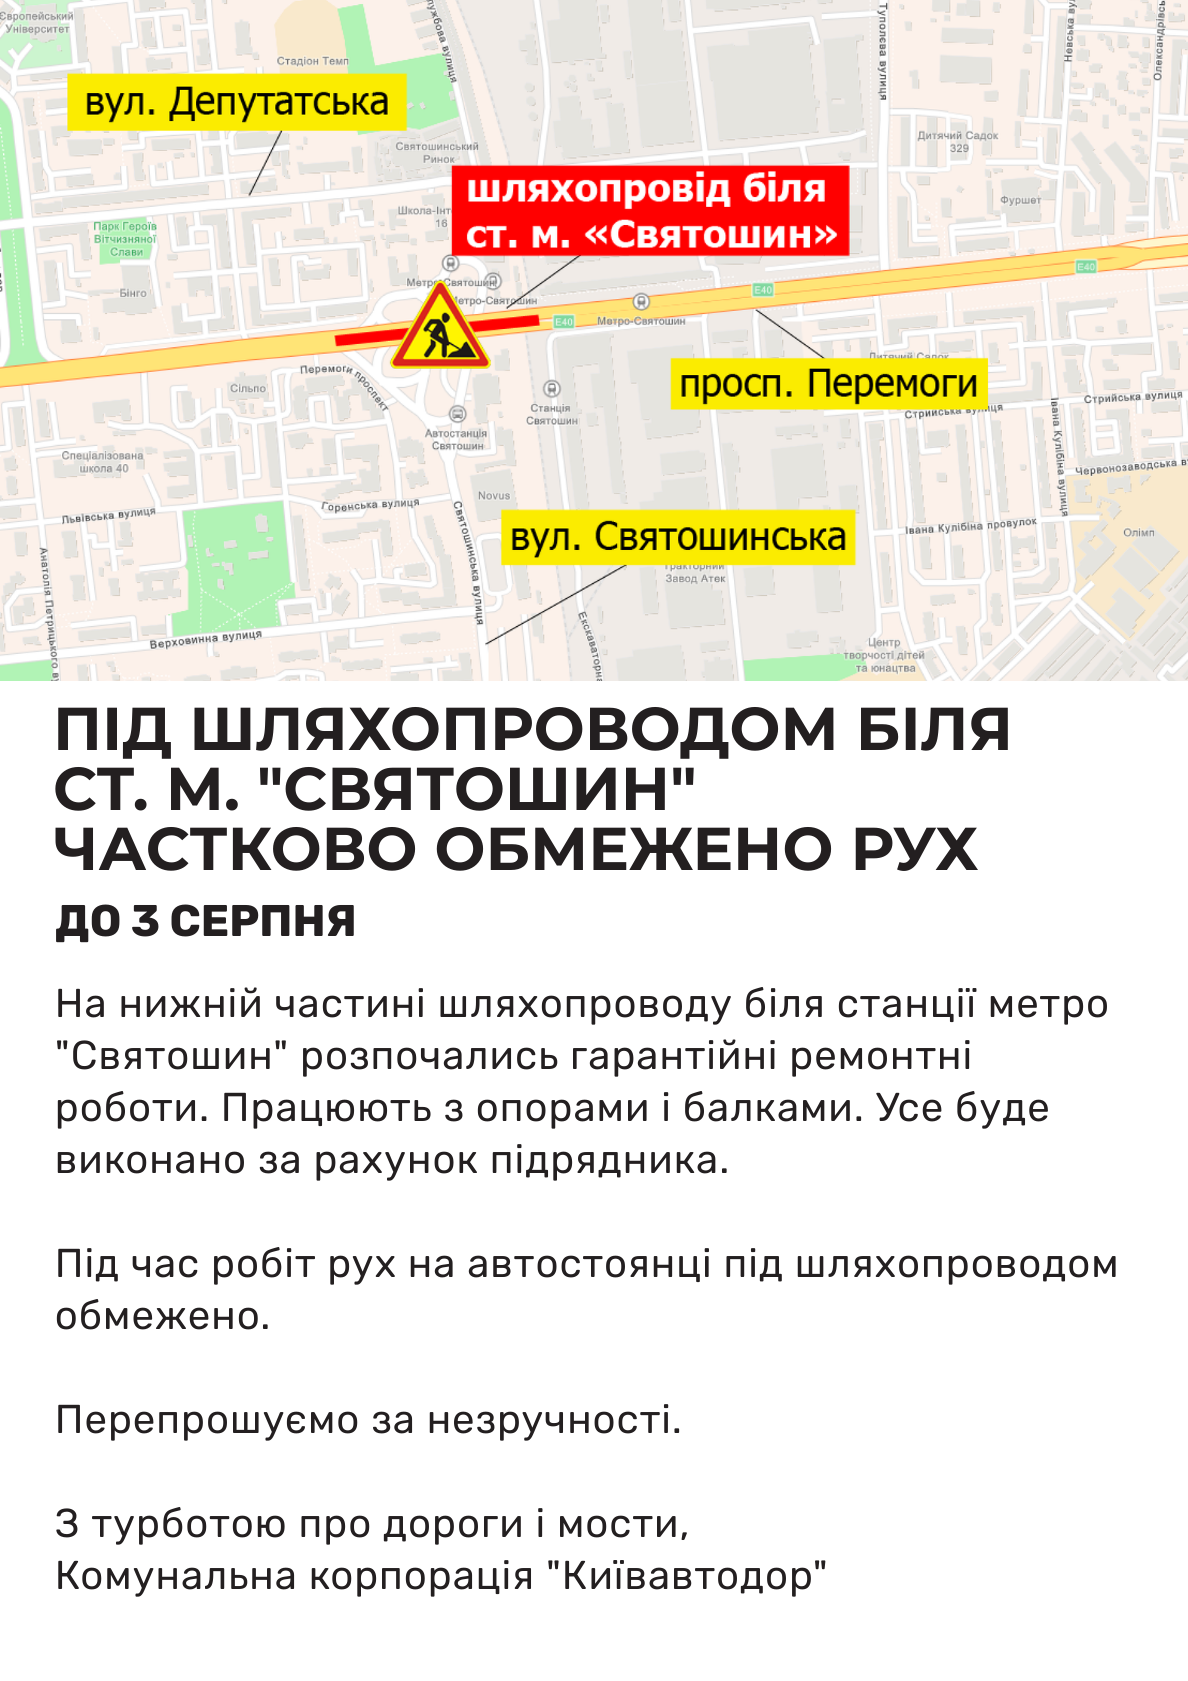 Обмеження руху в Києві